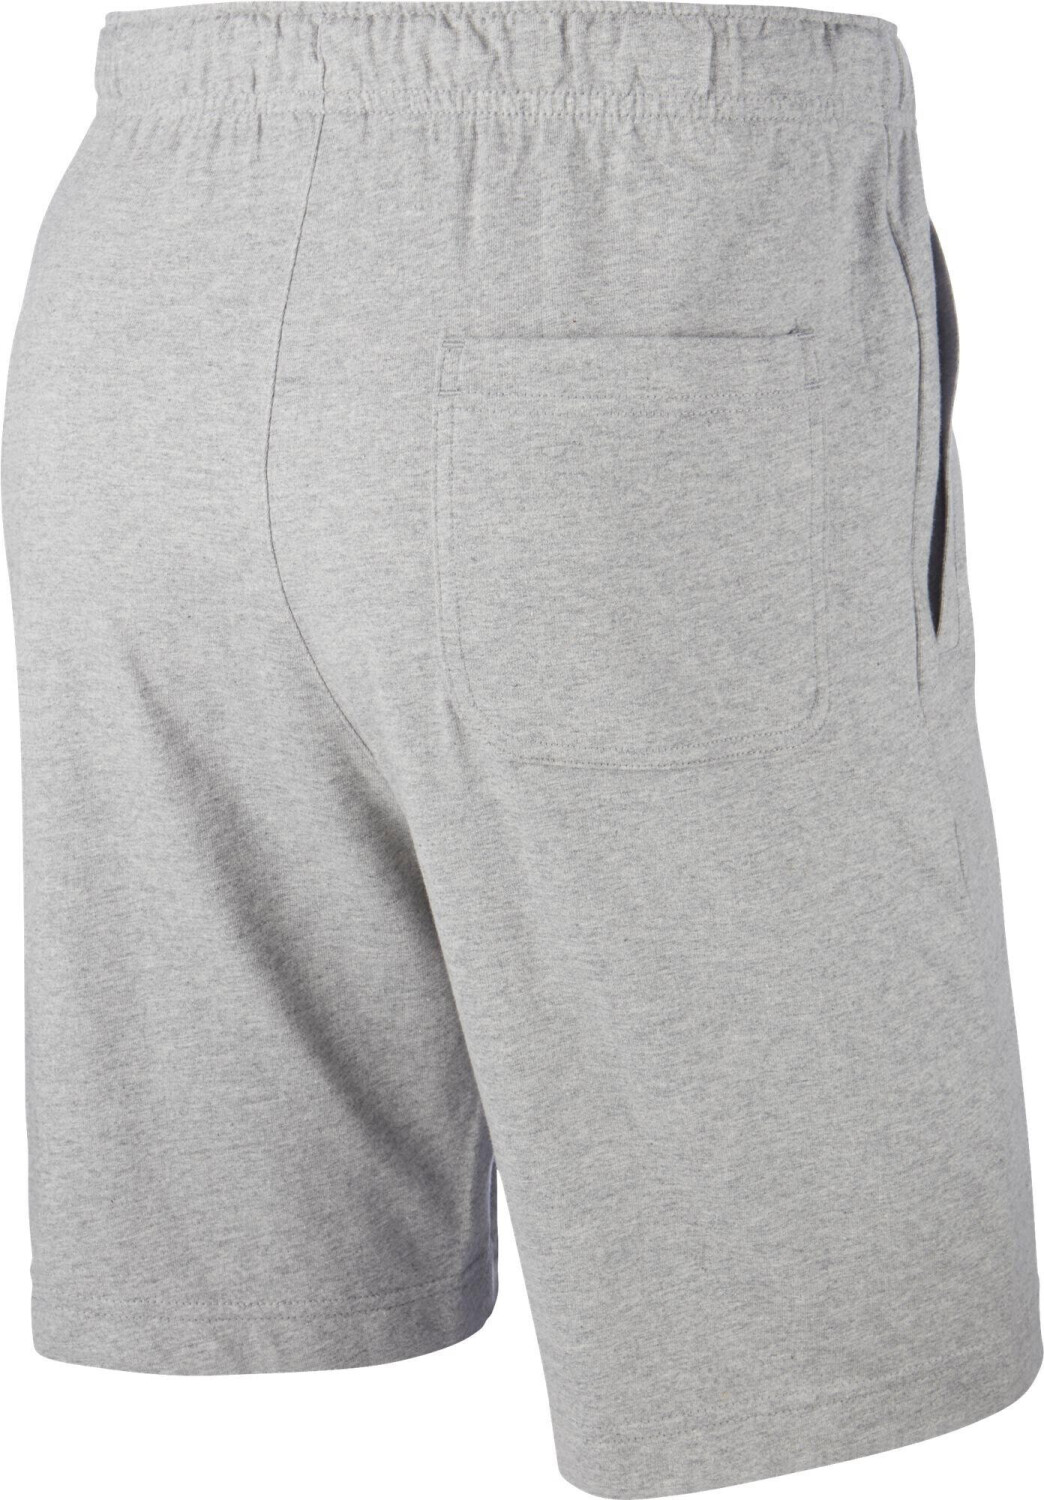 Buy Nike Sportswear Club Fleece Men's Shorts dark grey heather/white from  £21.99 (Today) – Best Deals on